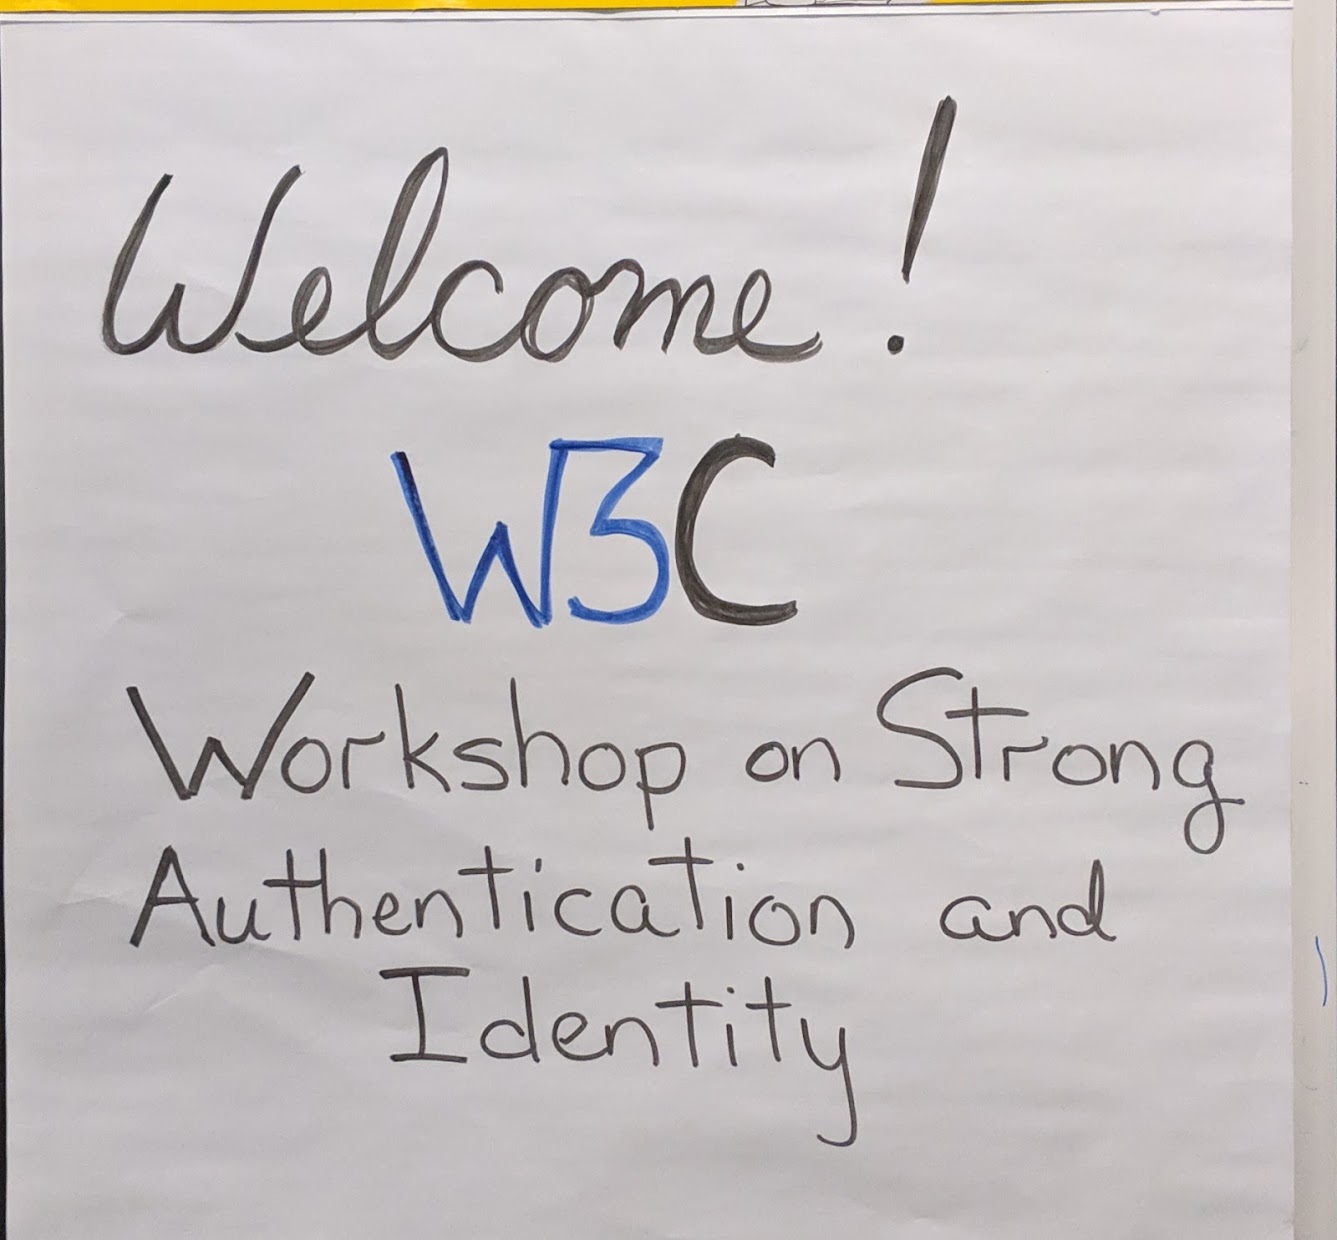 W3C опублікував сьогодні   звіт   з   Семінар W3C з питань сильної аутентифікації та ідентичності   , що відбувся 10-11 грудня 2018 року в Редмонд, штат Вашингтон (США)